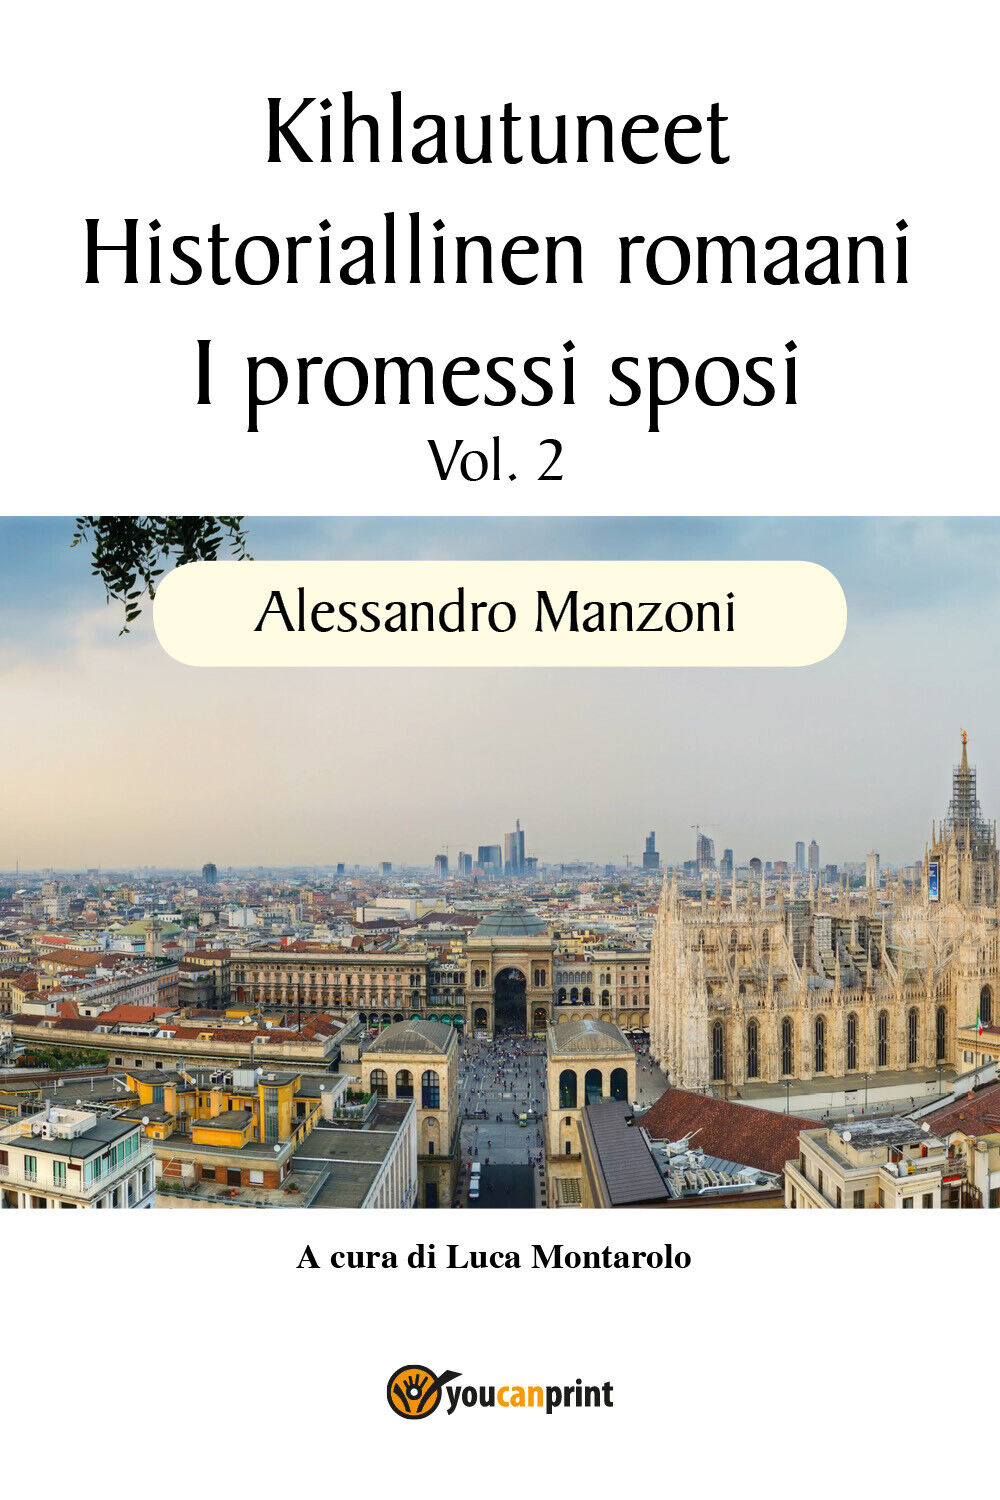 Kihlautuneet - Historiallinen romaani - I promessi sposi Vol. 2